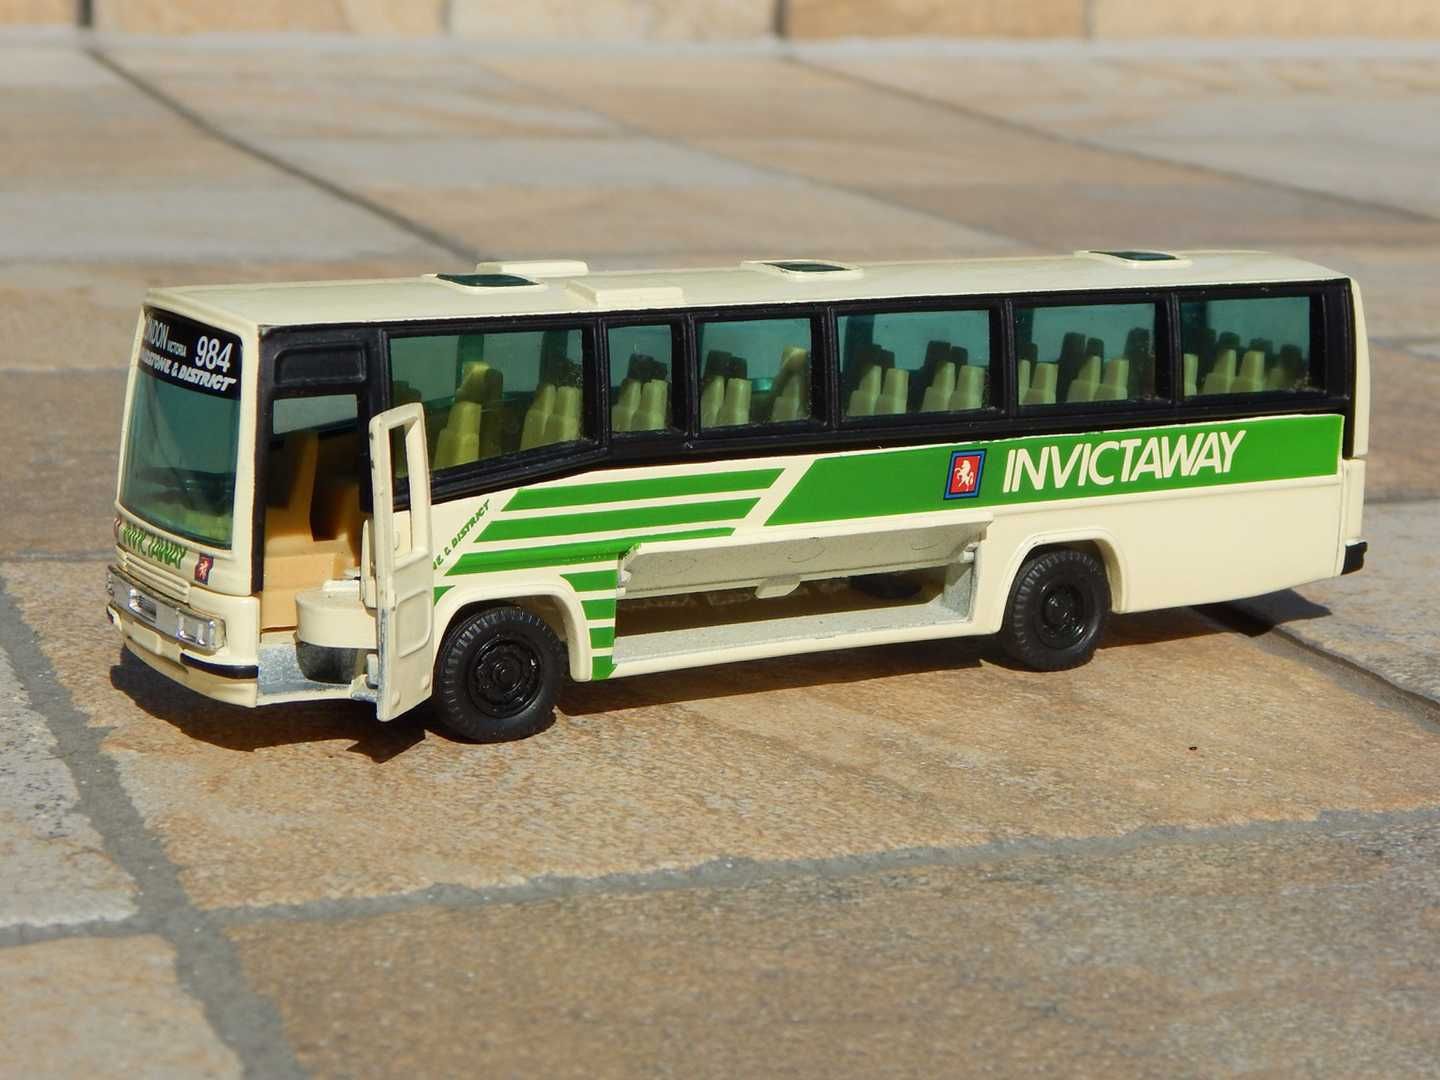 Macheta autocar autobuz Plaxtons Paramount 500 Corgi sc 1:50 + cutie